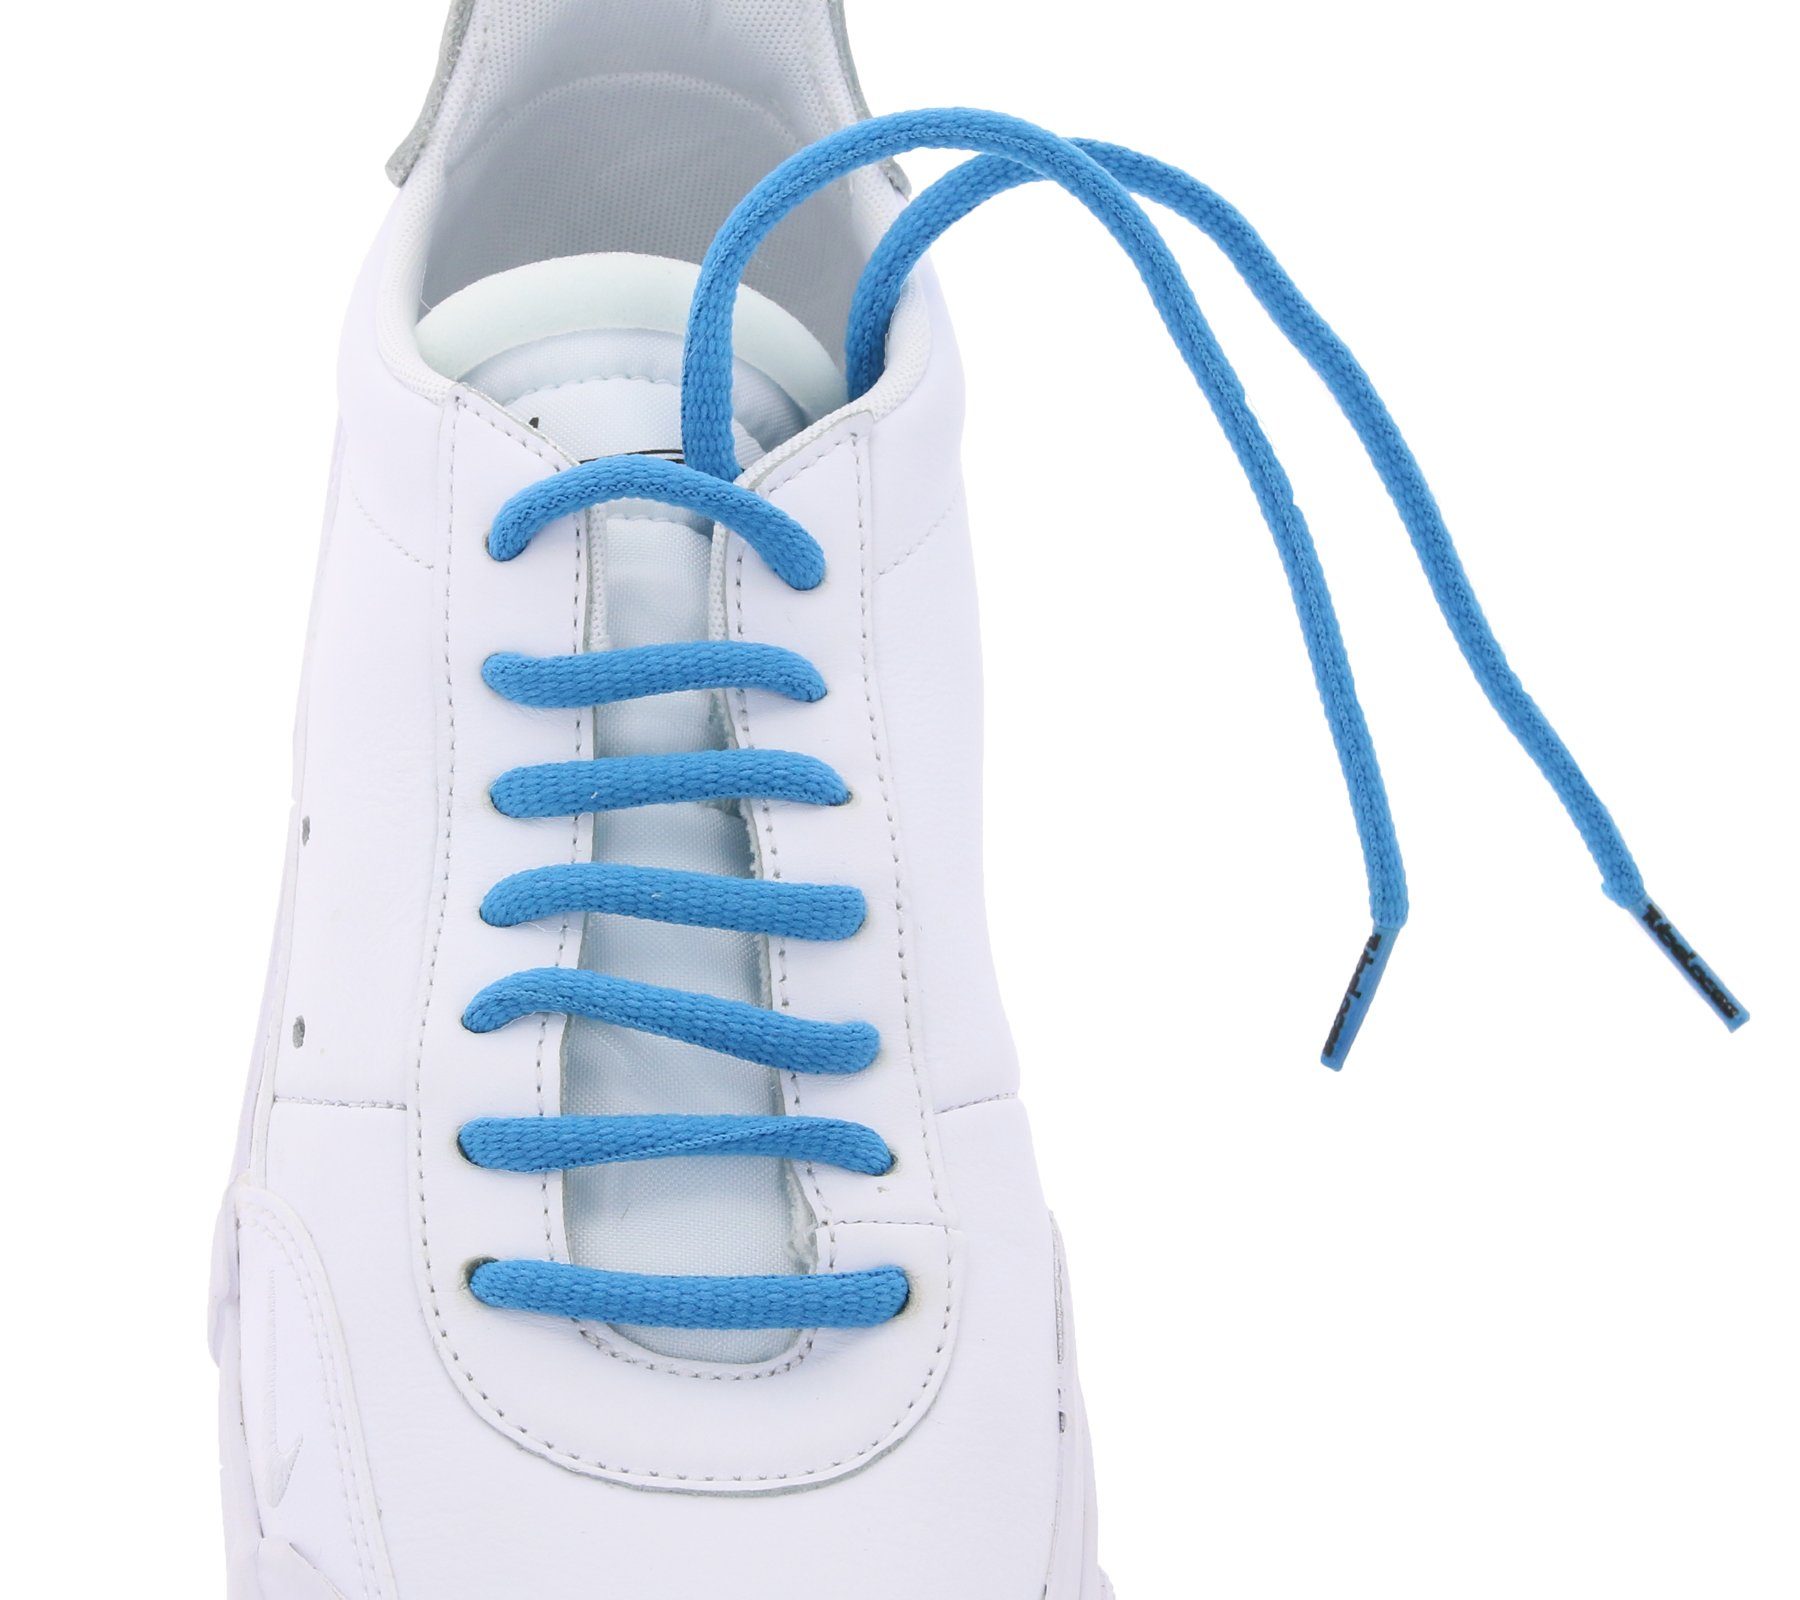 Tubelaces Schnürsenkel TubeLaces angesagte Schuhe top Schnürsenkel Schnürbänder Schuhband Blau